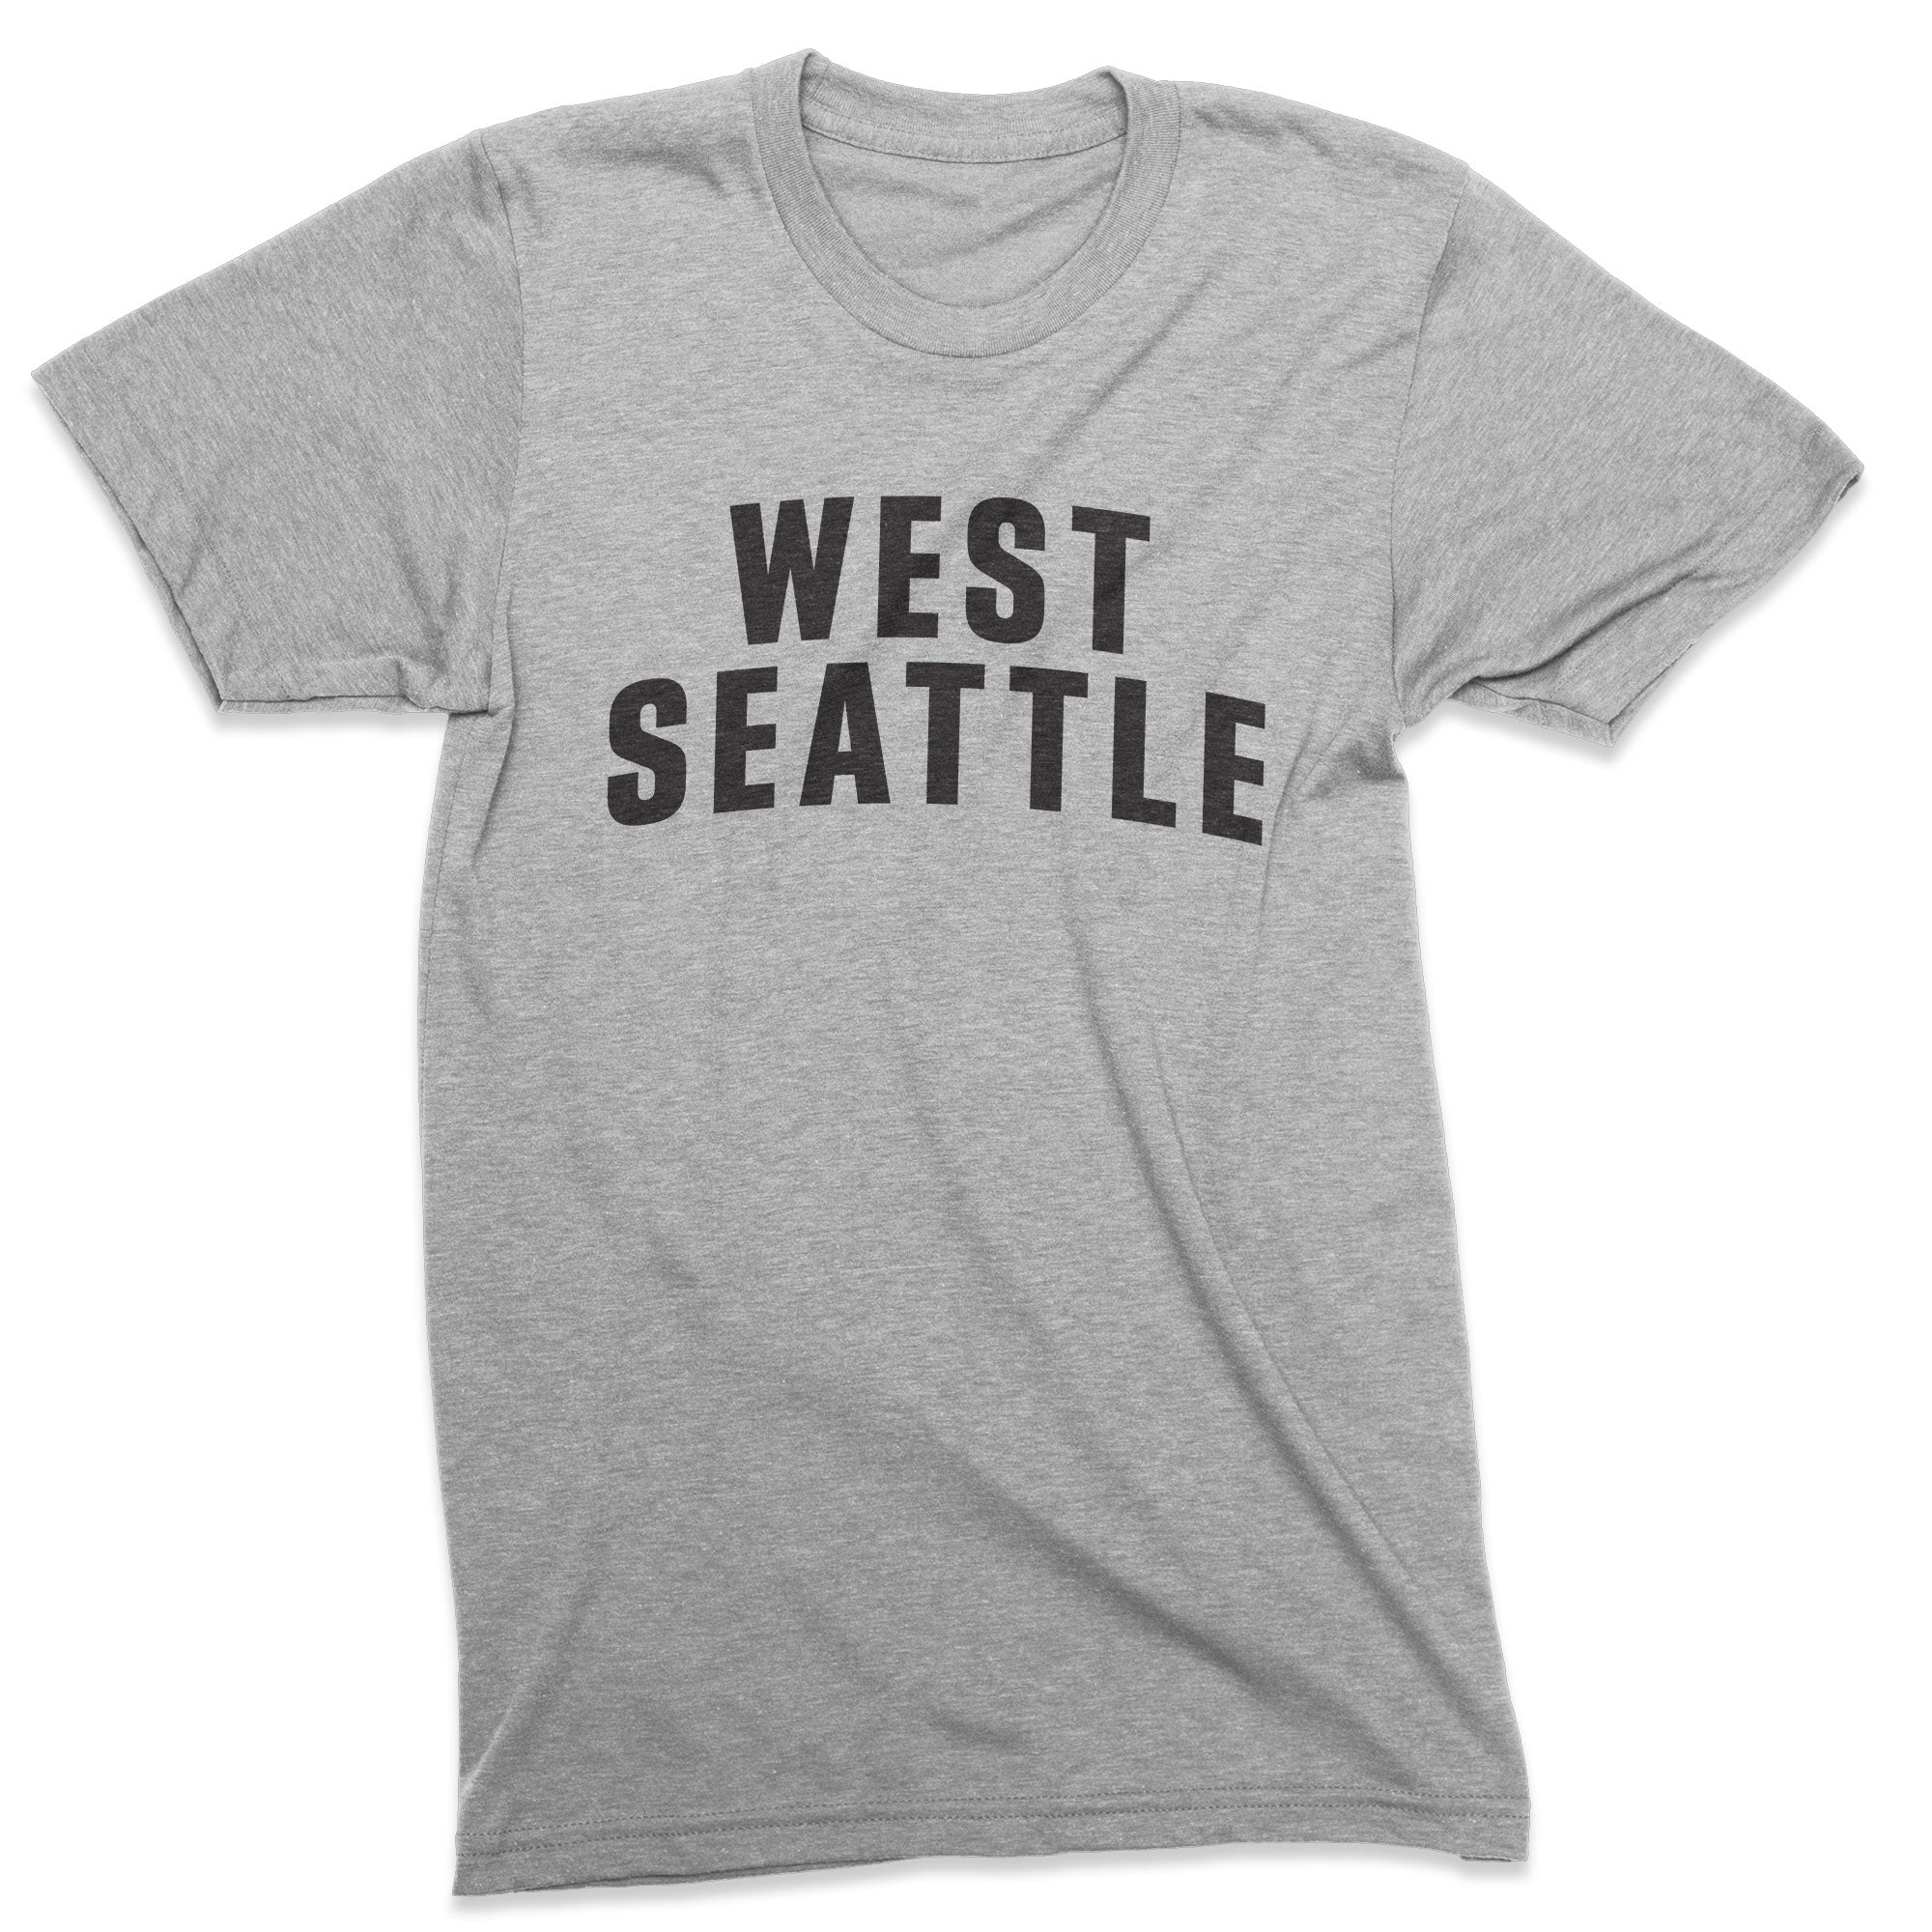 Seattle Neighborhood tshirt - Viaduct